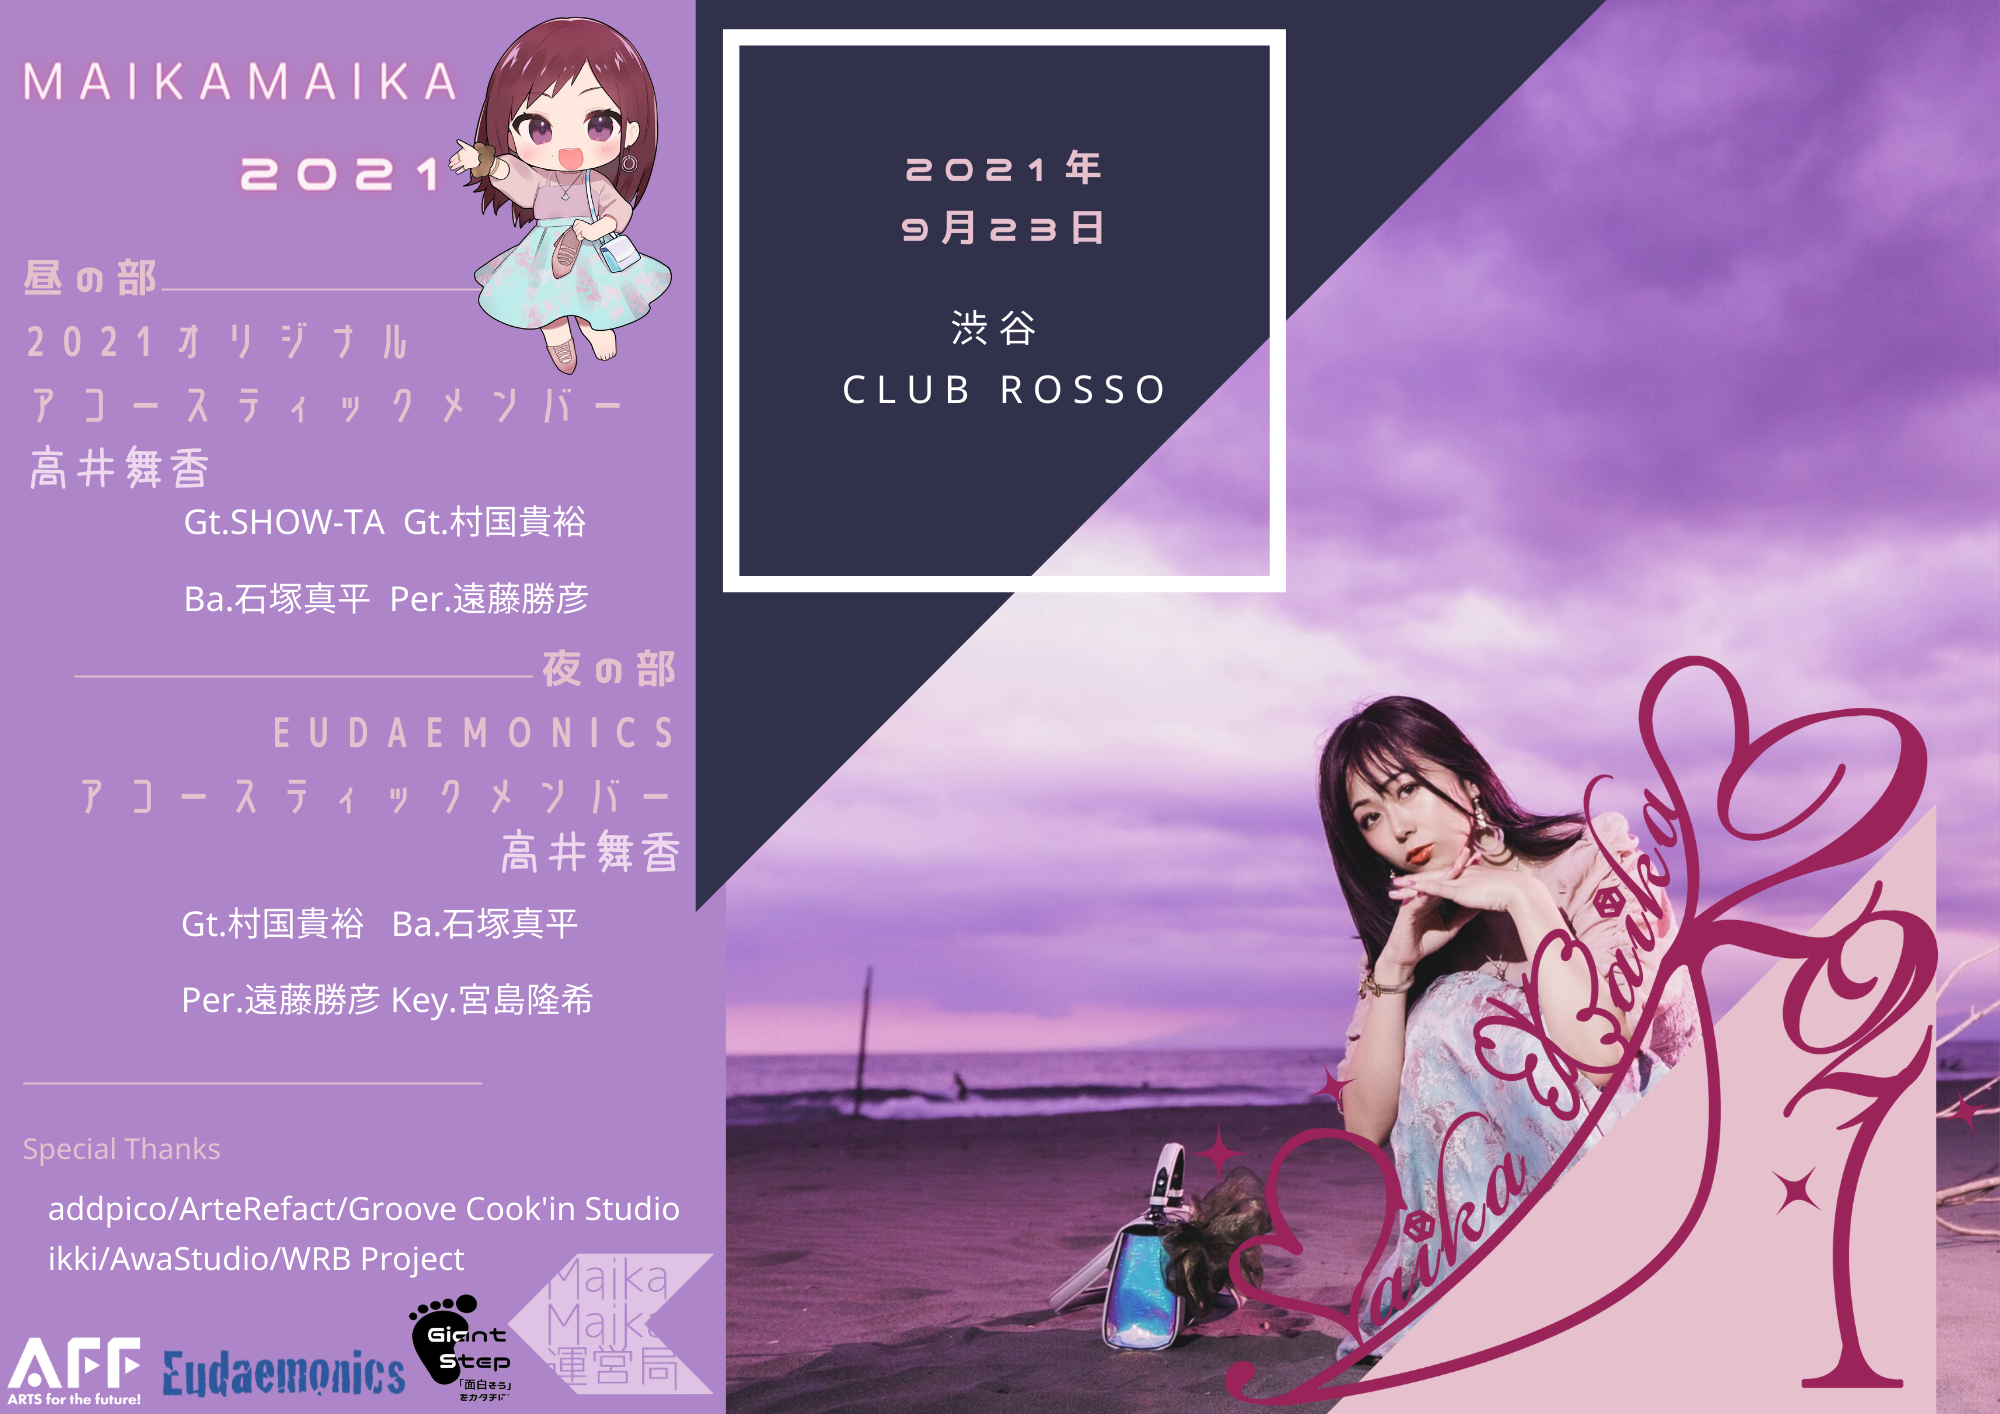 声優 高井舞香の誕生日ライブイベント「MaikaMaika2021」が9月23日に有観客とオンライン配信で開催することが決定！